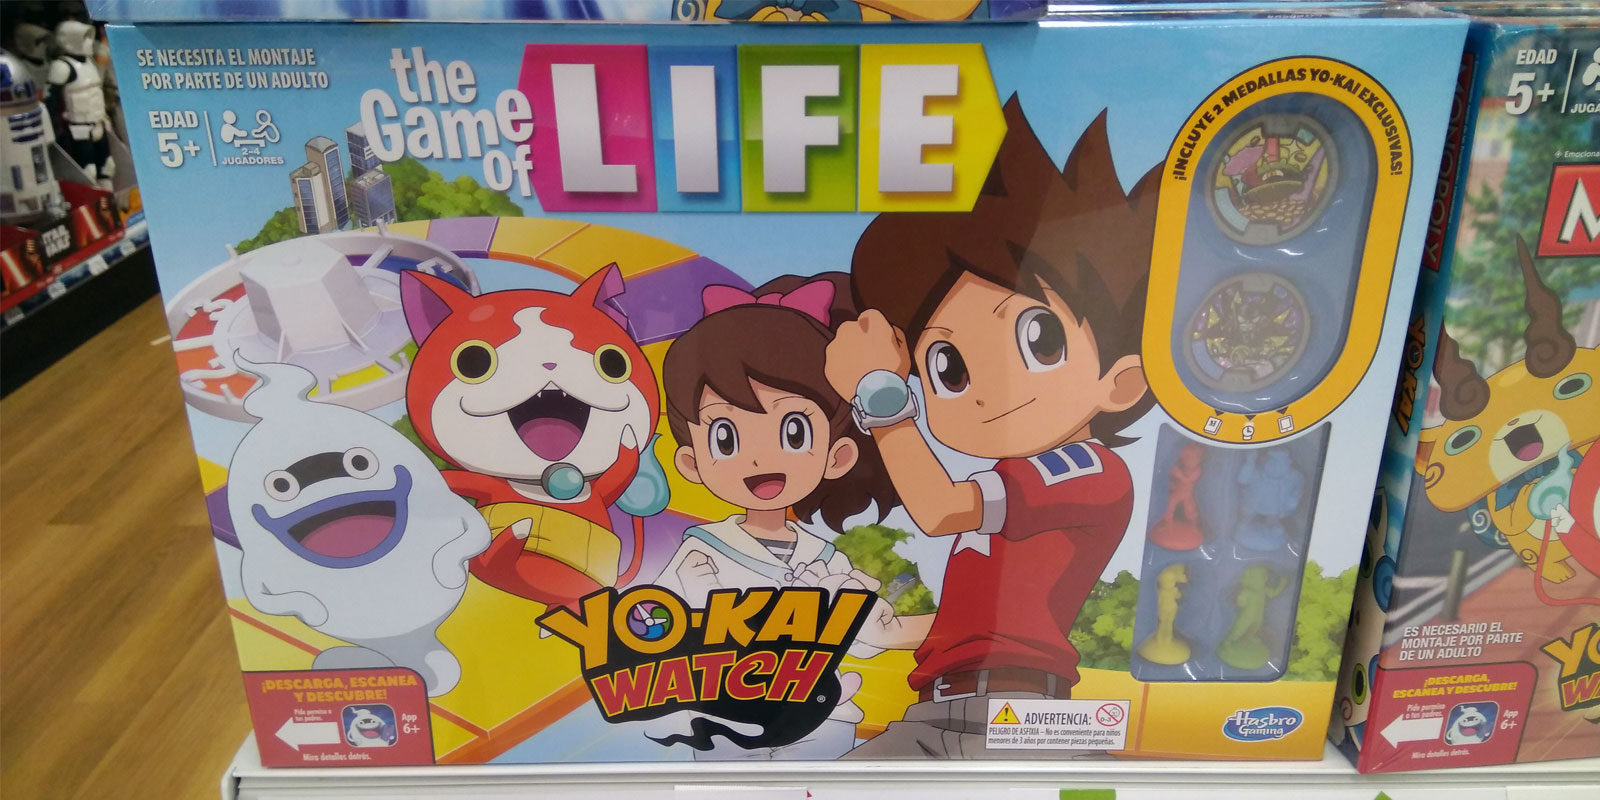 'The Game of Life edición Yo-kai Watch' a la venta en España, ¡con medallas exclusivas!